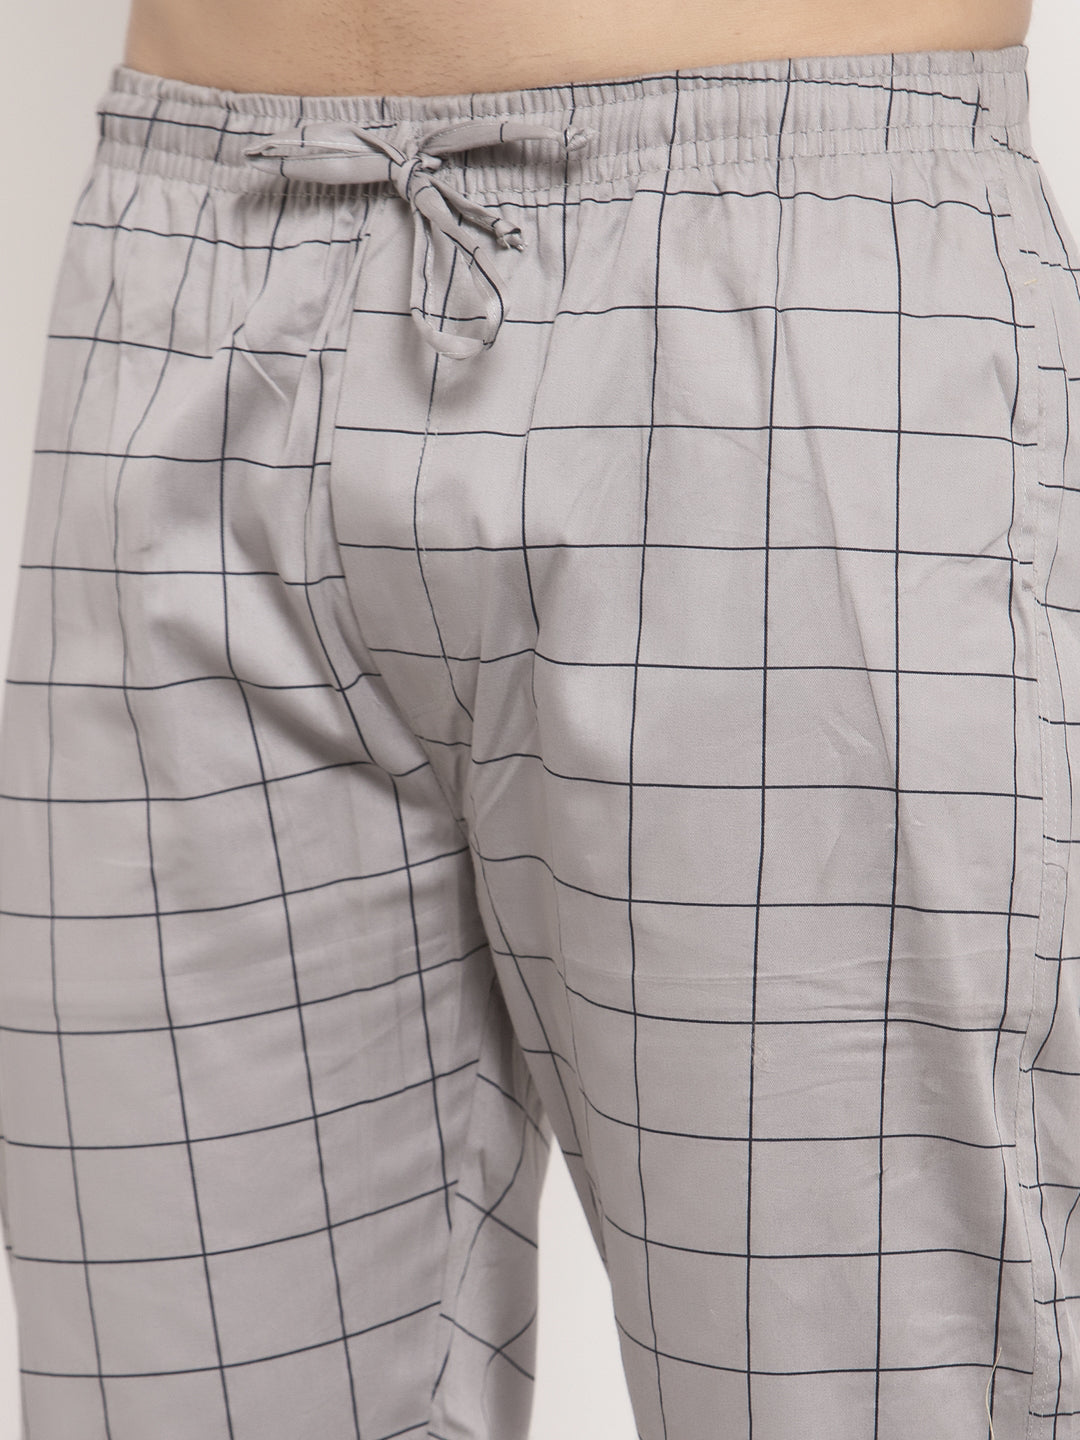 Jainish Men's Grey Checked Cotton Track Pants ( JOG 012Grey ) - Distacart